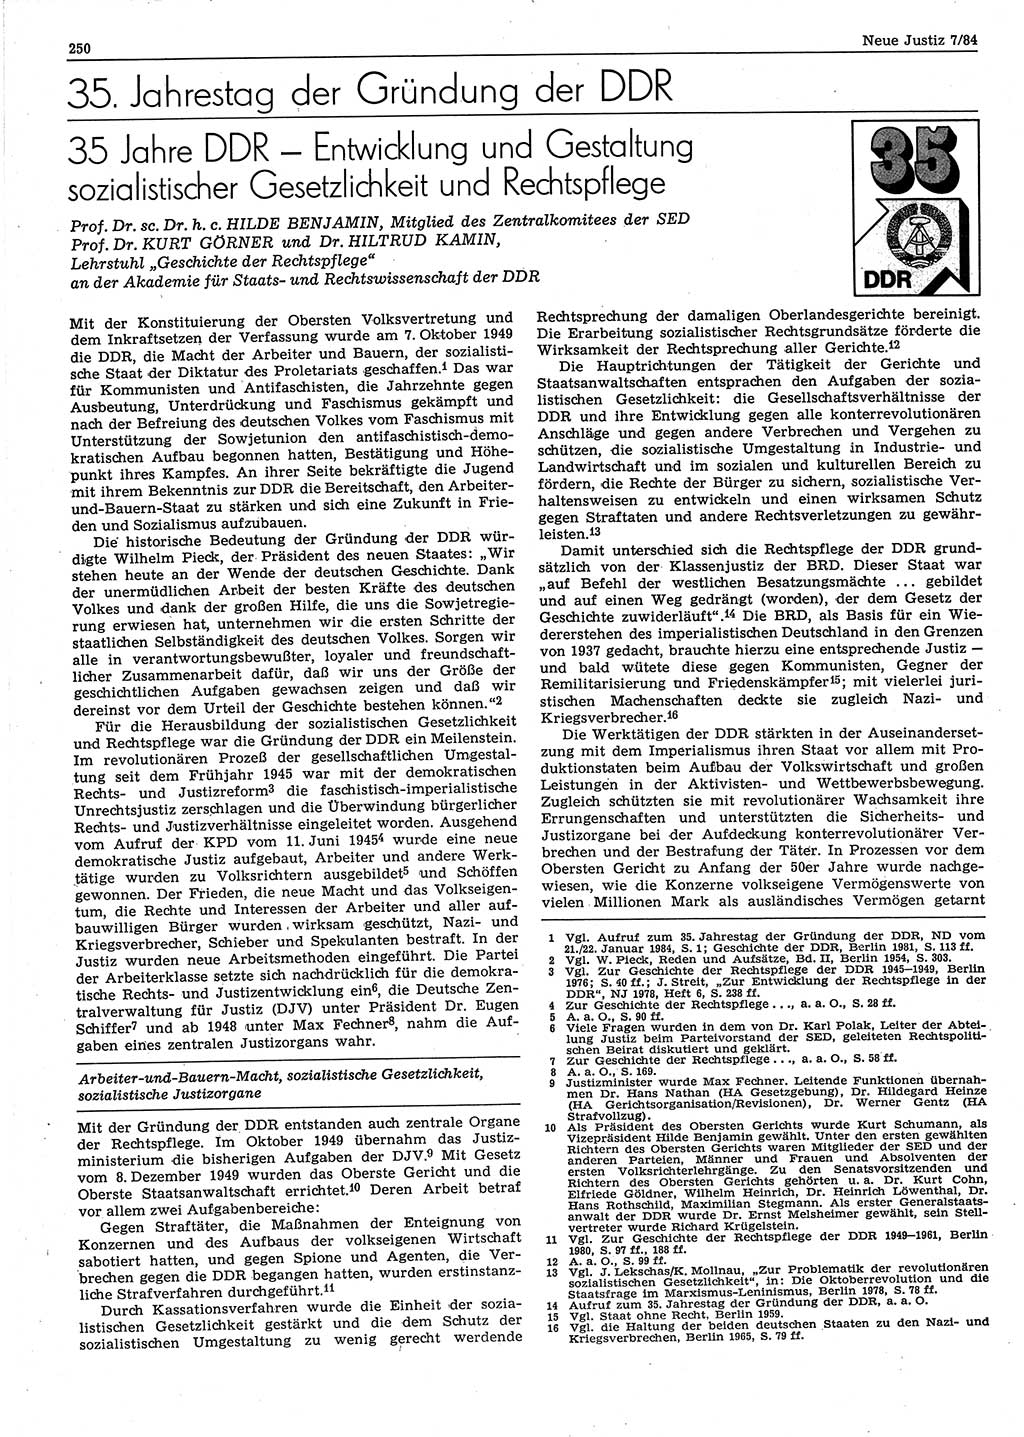 Neue Justiz (NJ), Zeitschrift für sozialistisches Recht und Gesetzlichkeit [Deutsche Demokratische Republik (DDR)], 38. Jahrgang 1984, Seite 250 (NJ DDR 1984, S. 250)